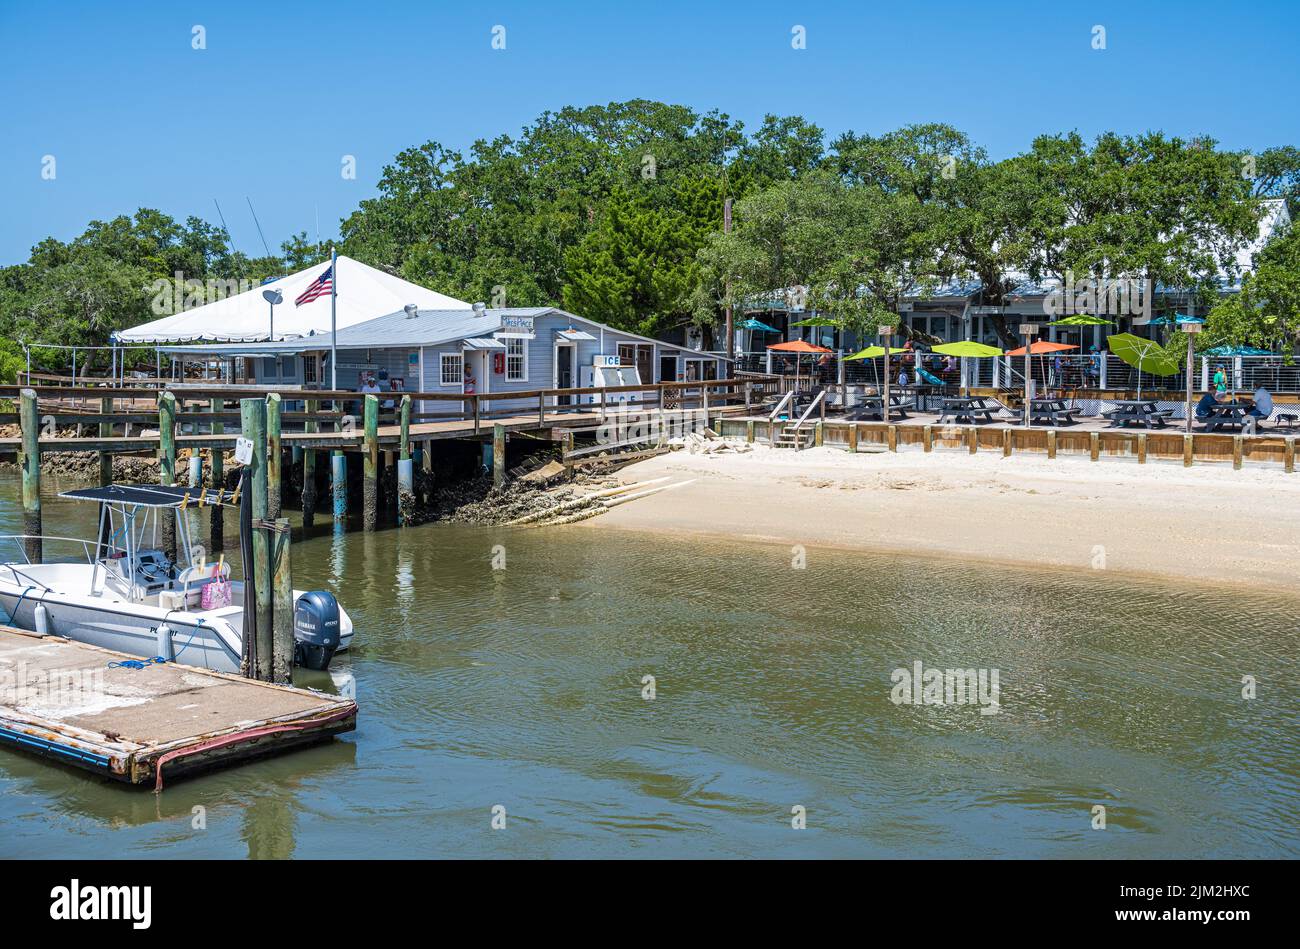 El restaurante frente al mar de la tía Kate en el río Tolomato en St. Augustine, Florida, ofrece comida familiar de calidad y mariscos frescos locales. (ESTADOS UNIDOS) Foto de stock